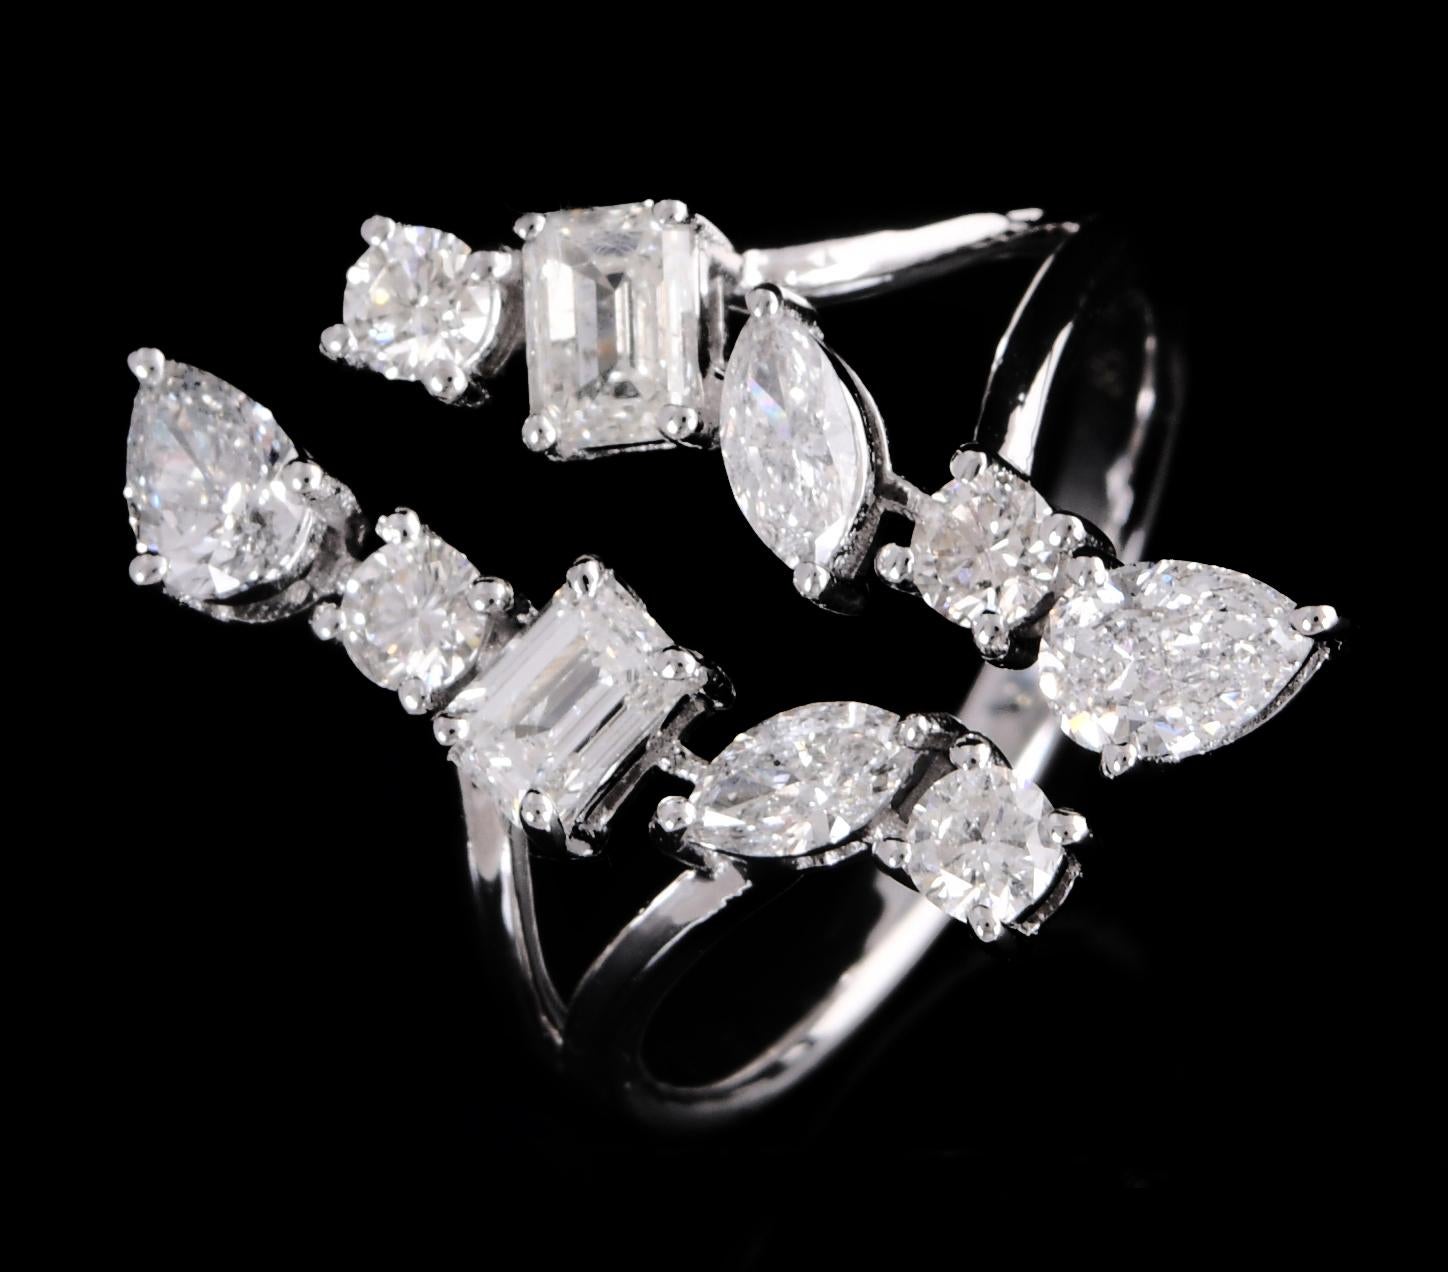 Der mit viel Liebe zum Detail gefertigte Ring hat ein unverwechselbares Manschettendesign, das sich anmutig um den Finger schmiegt und zeitgenössischen Charme und Raffinesse ausstrahlt. Die Diamanten sind fachmännisch in prächtiges 18-karätiges